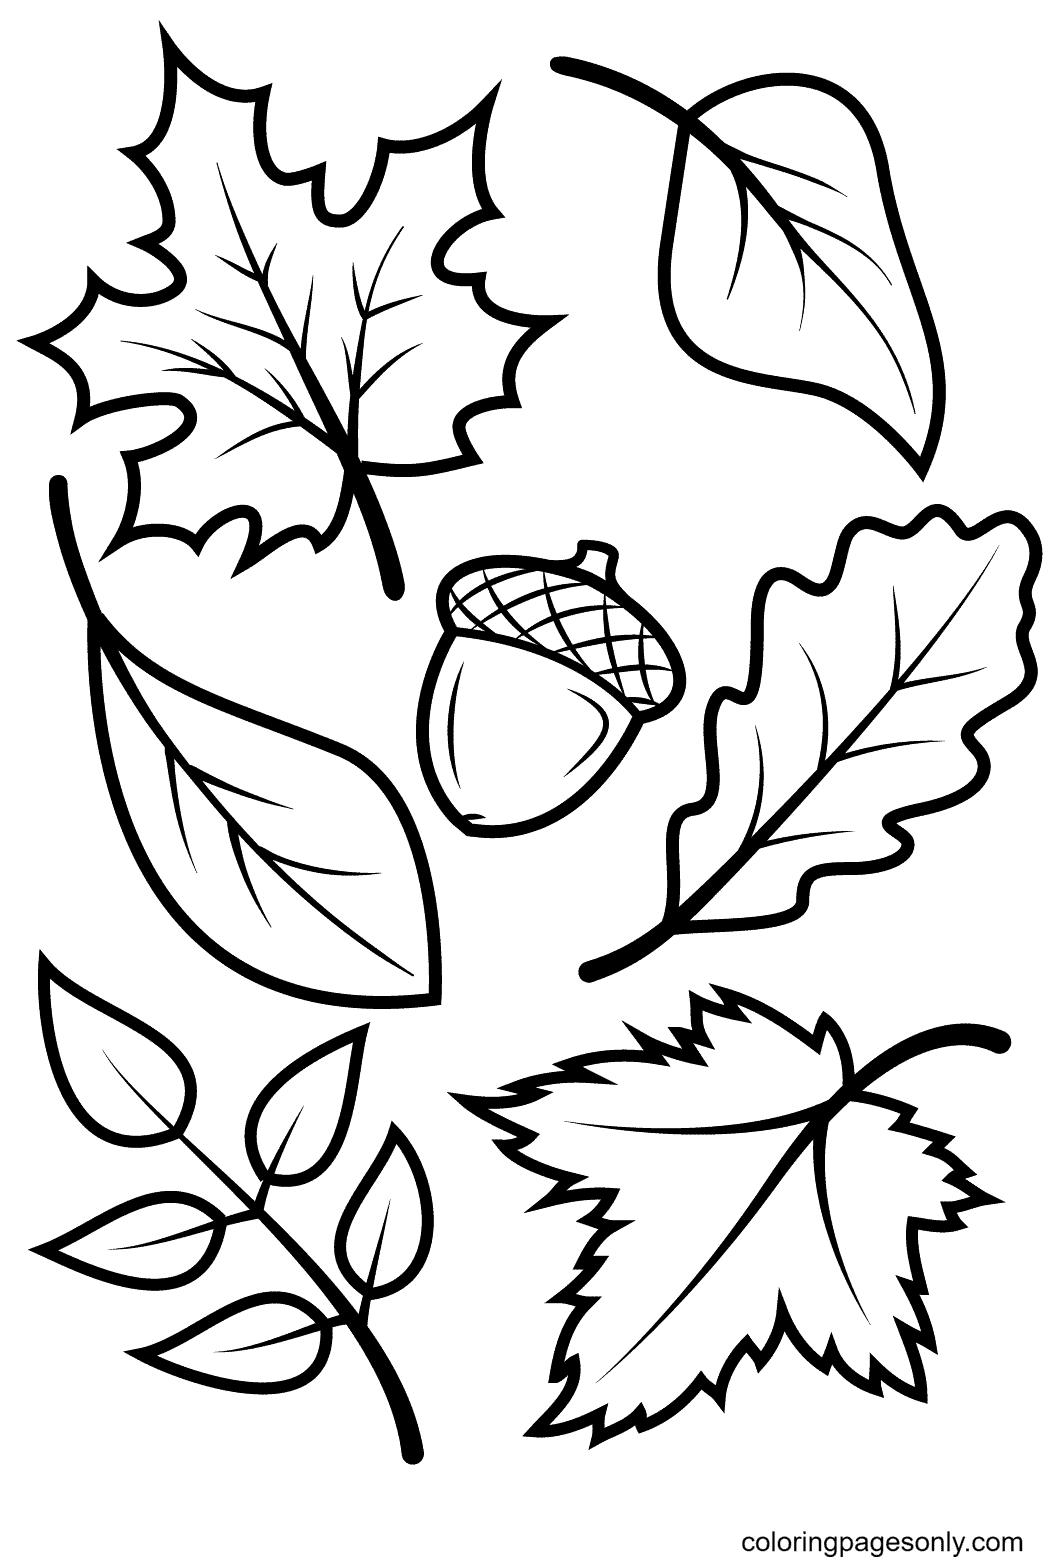 Herfstbladeren en eikels van herfstbladeren